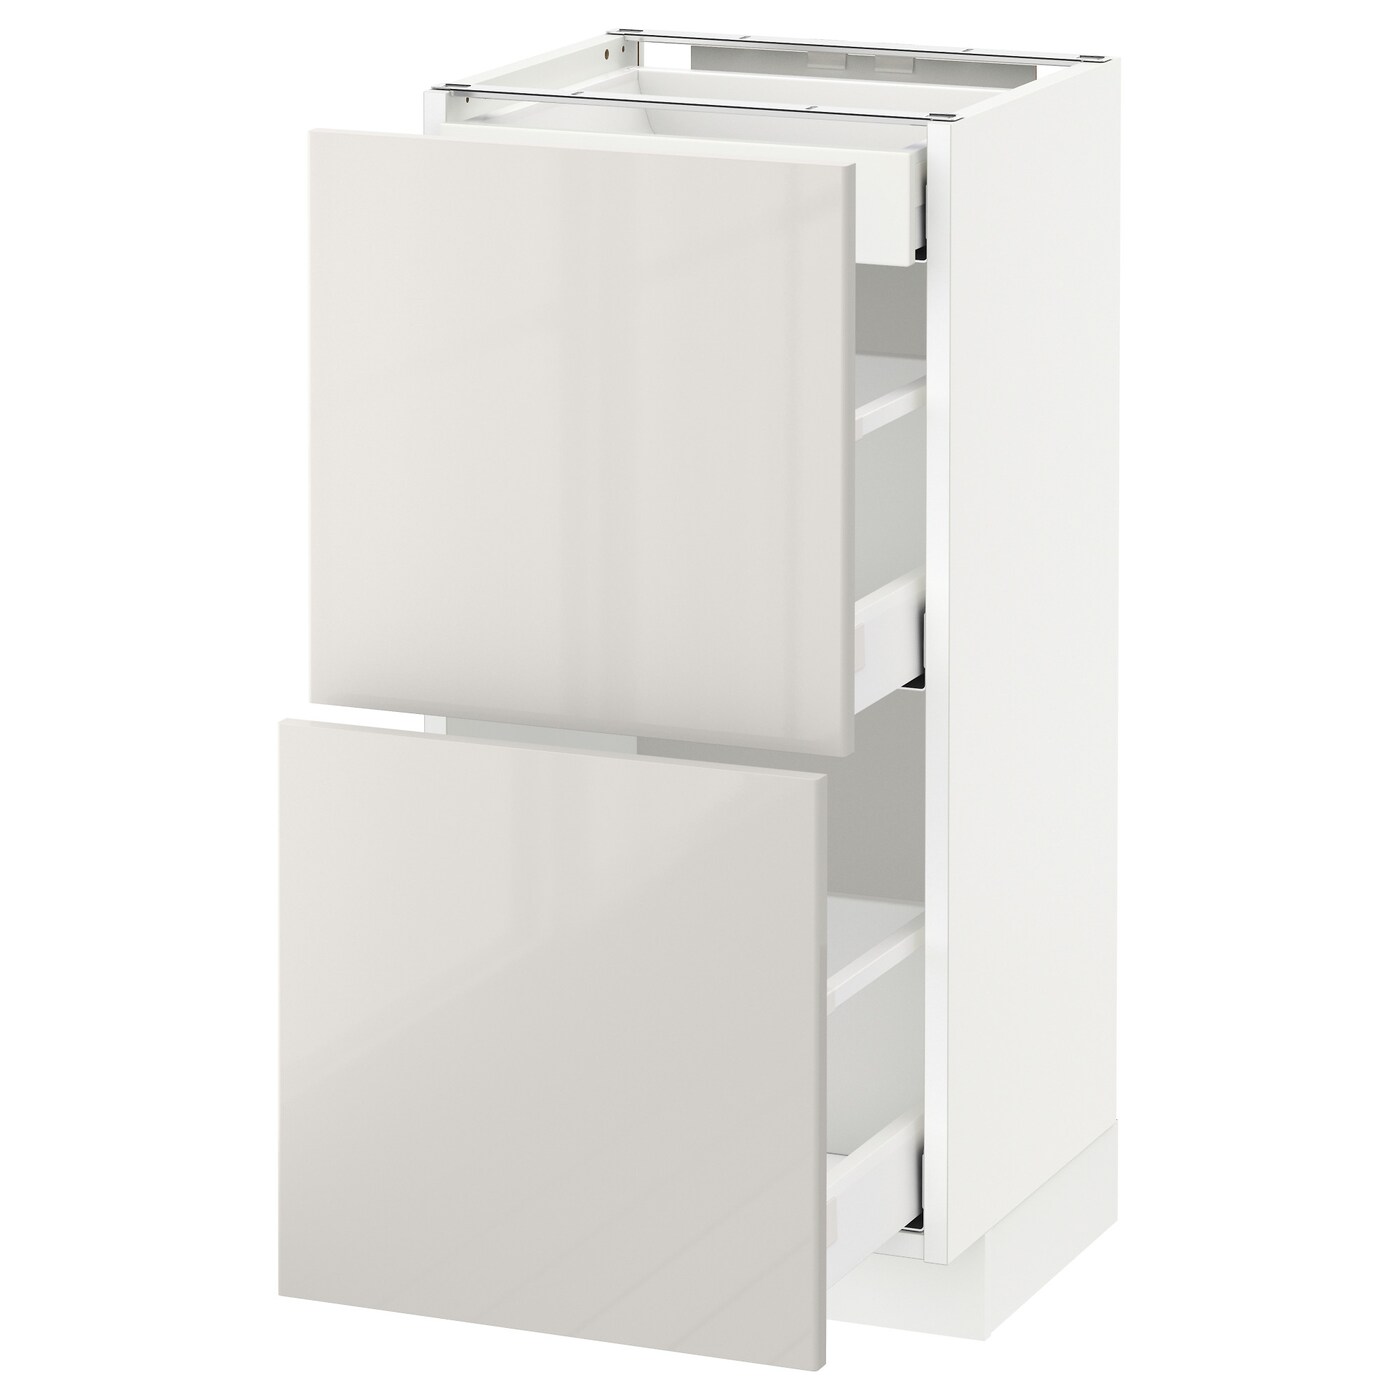 Напольный кухонный шкаф  - IKEA METOD MAXIMERA, 88x39x40см, белый/светло-серый, МЕТОД МАКСИМЕРА ИКЕА